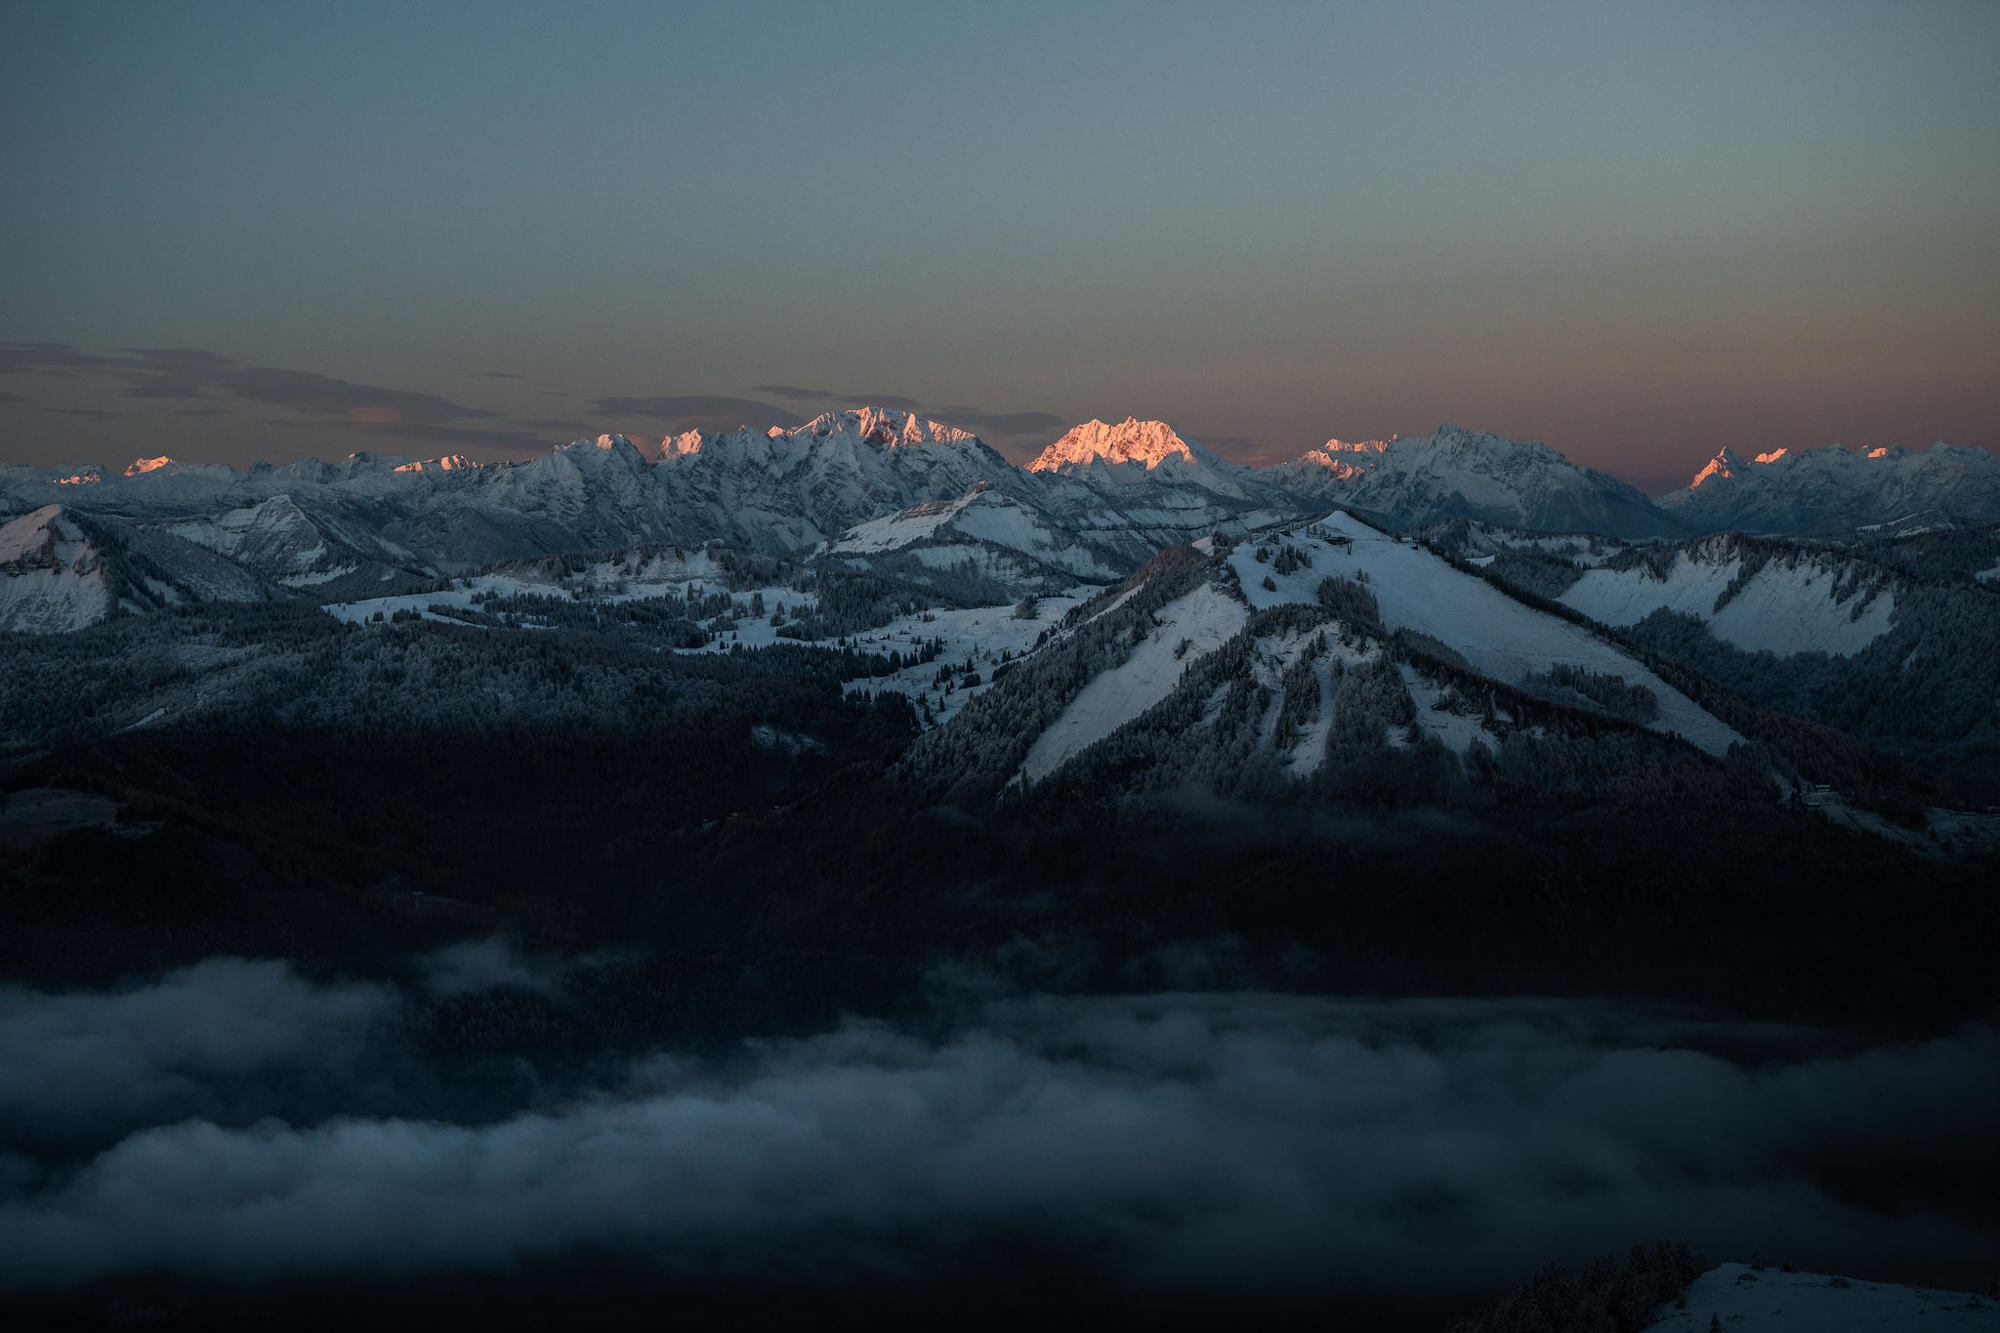 70mm -F4,5 – ISO 500 – 1/400s. Wie fotografiert man Berge im Winter, Sebastian Mittermeier?